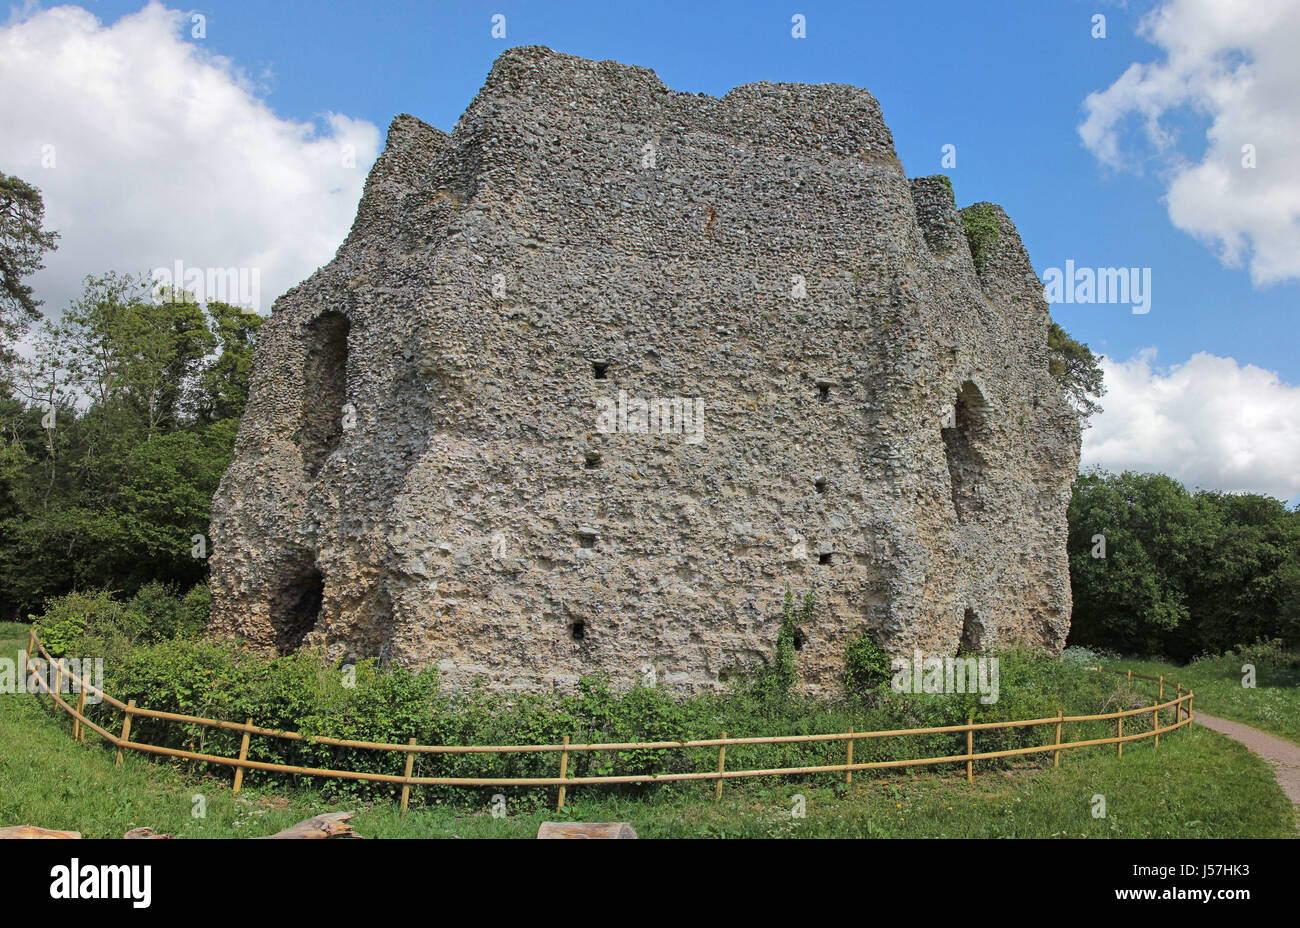 Historische Ruinen der Krönungsfeierlichkeiten Castle auch bekannt als King John Castle am Ufer des The Basingstoke Canal, Hampshire, England UK Stockfoto